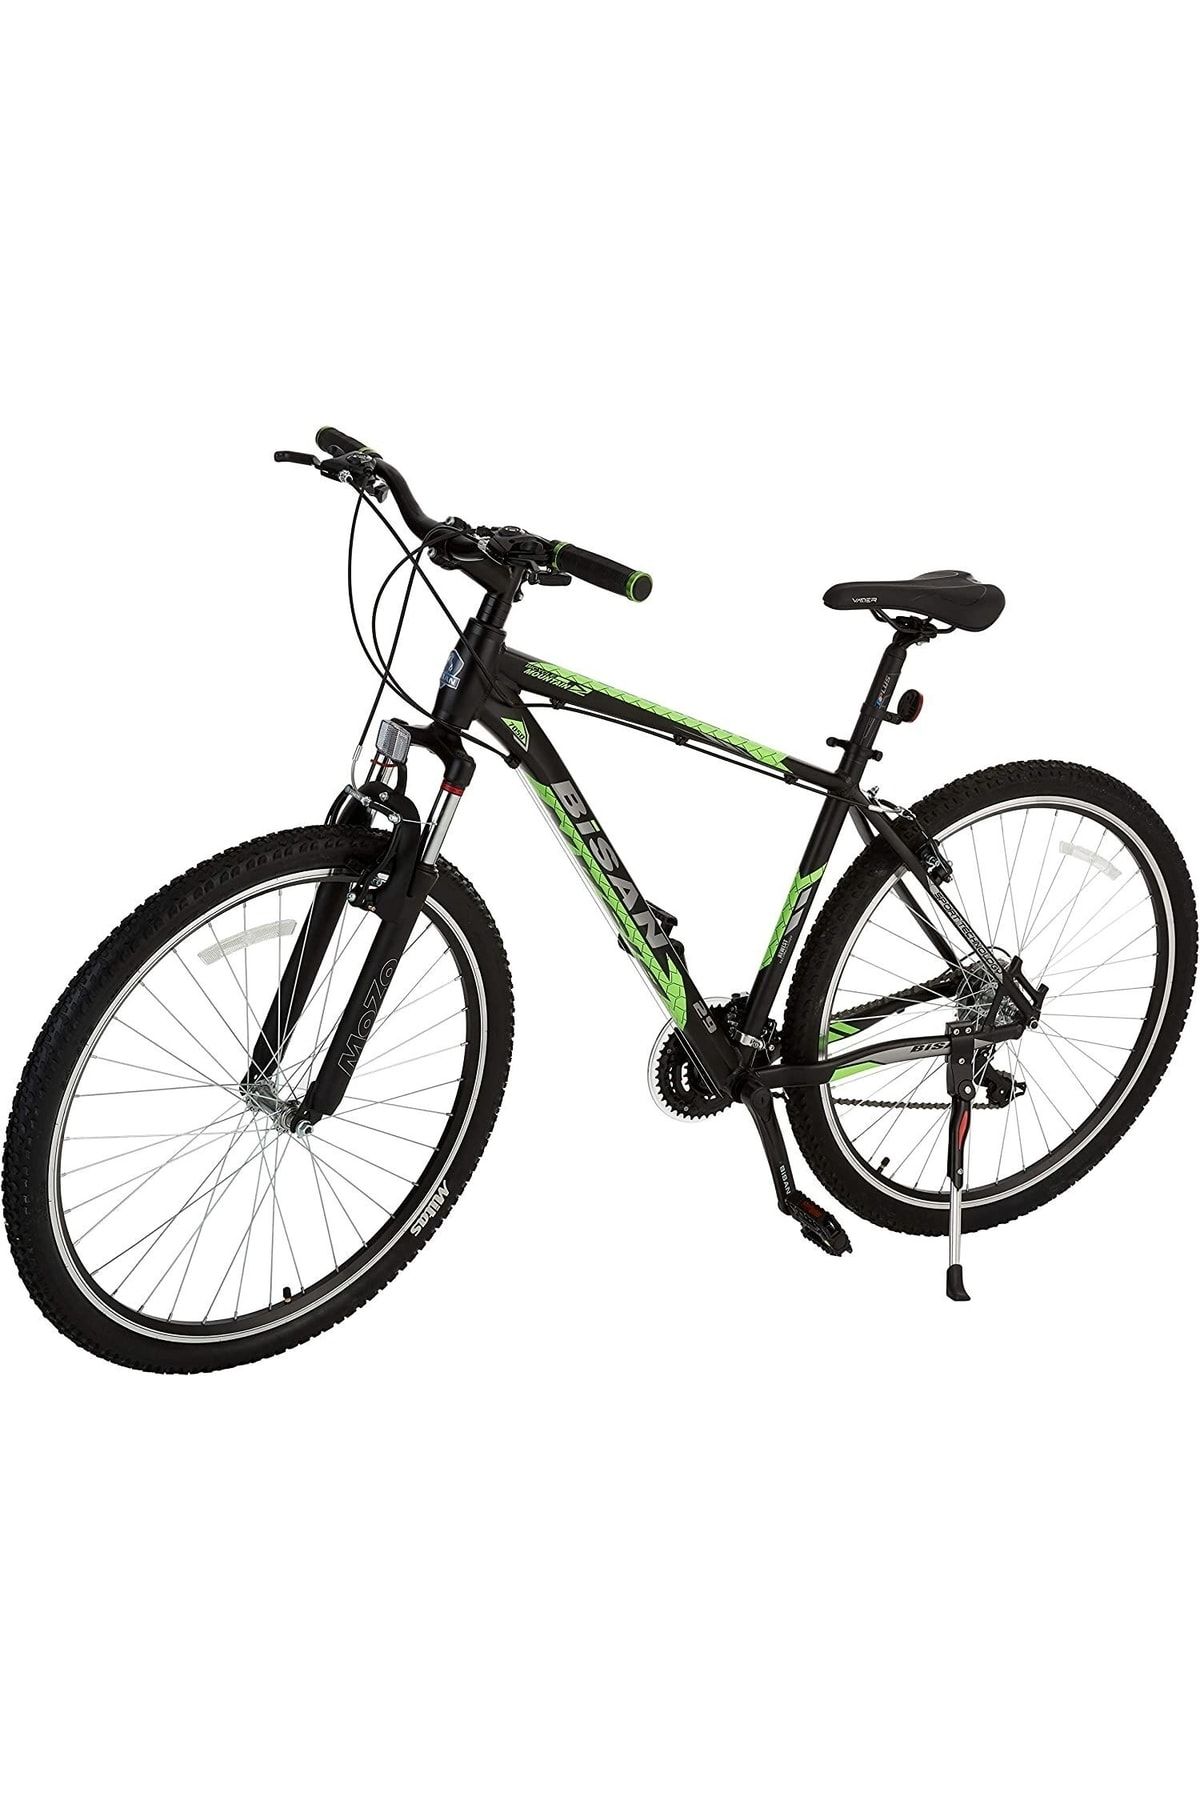 Bisan Mtx 7050 29 Jant 21 Vites Vb Dağ Bisikleti Mtb Siyah - Yeşil 48cm